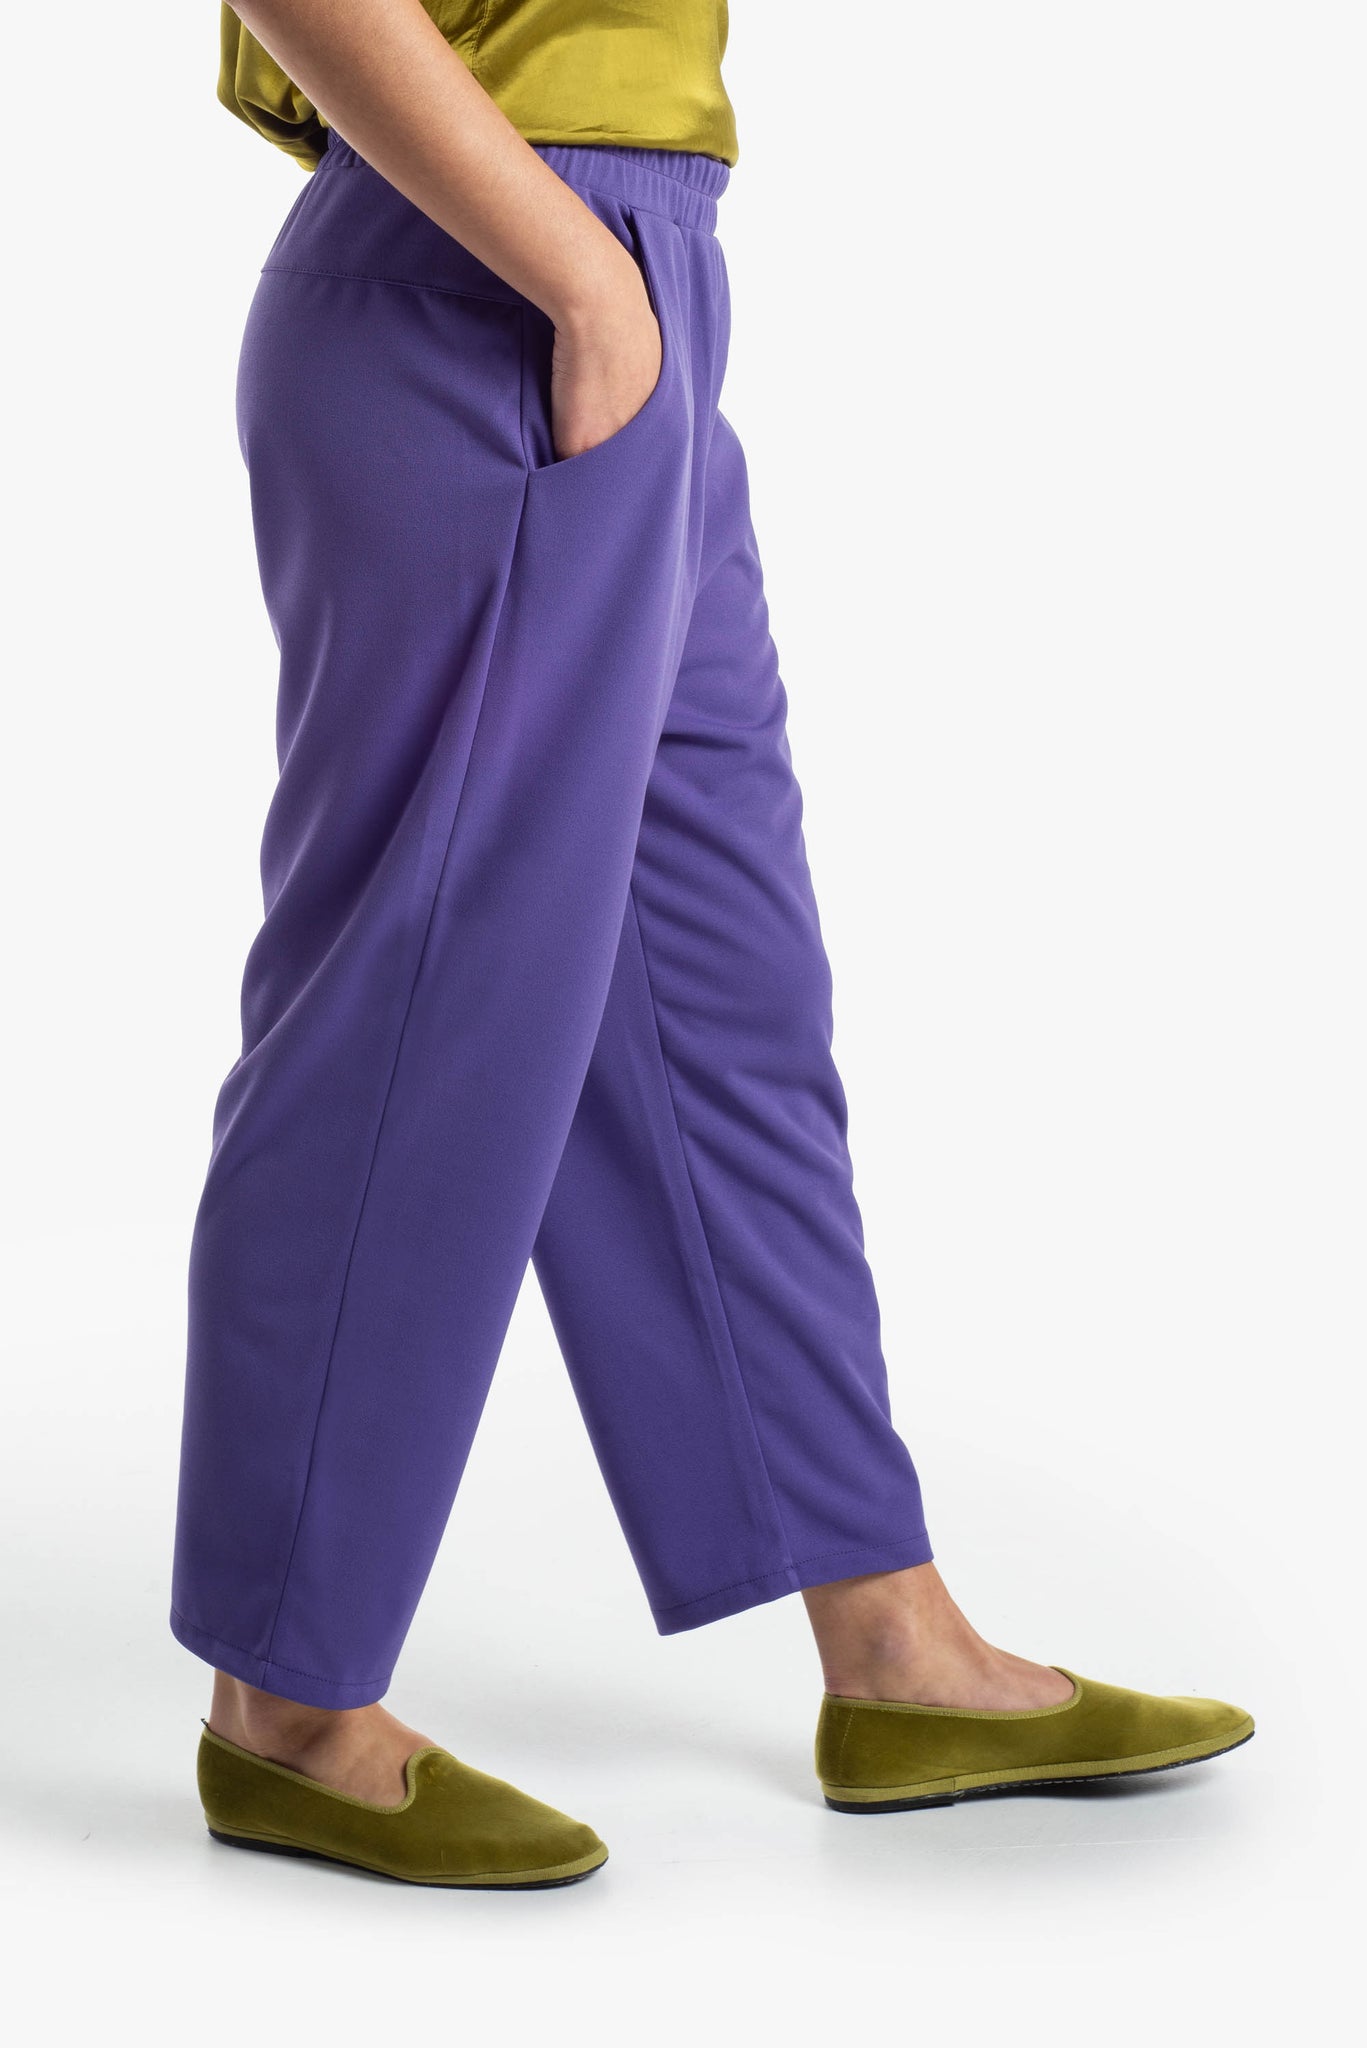 Pantalone in tessuto tecnico elasticizzato